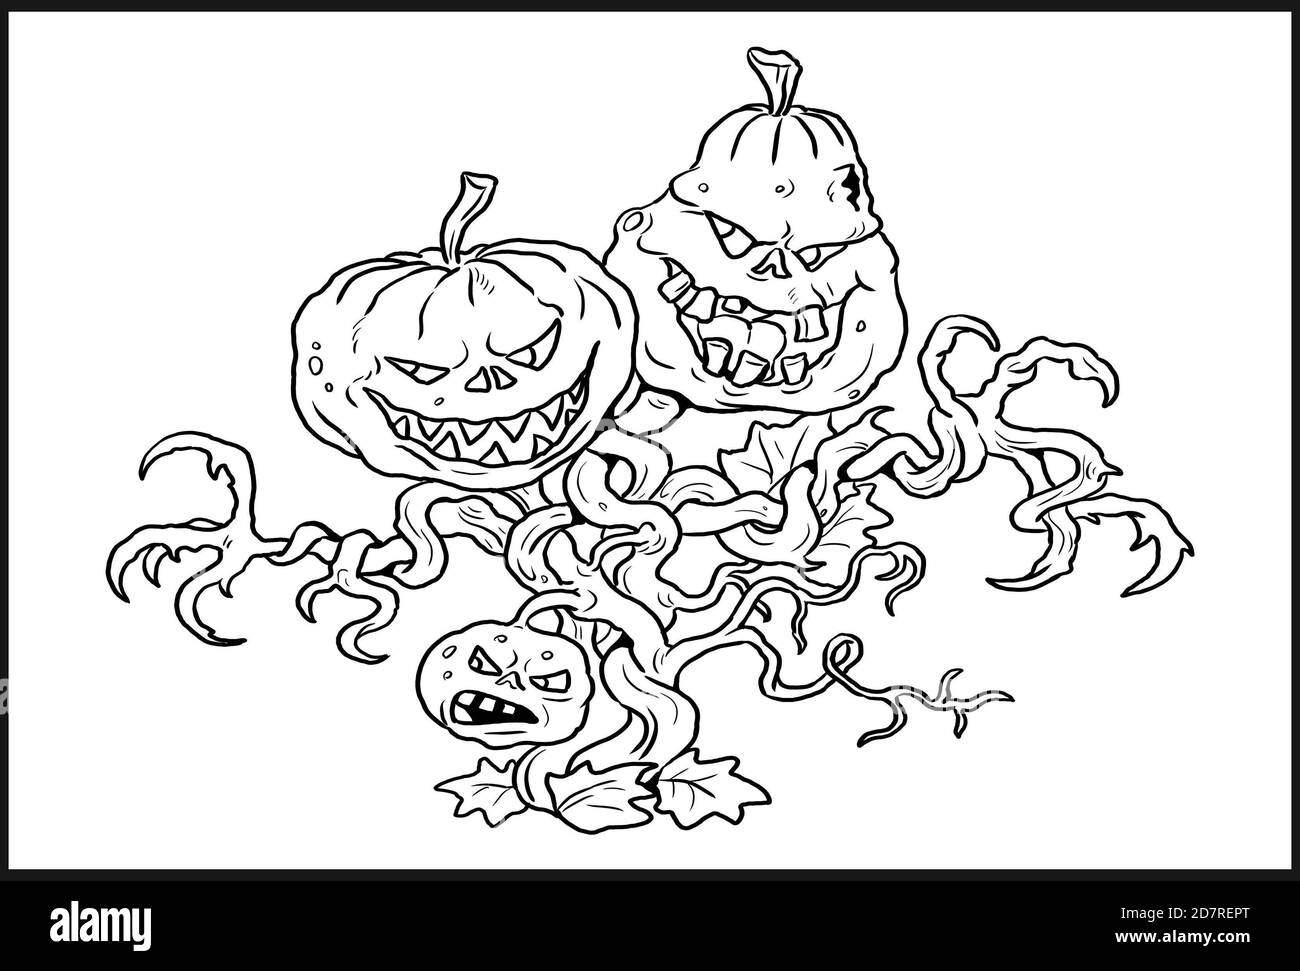 Divertido dibujo de la familia de las calabazas. Ilustración de Halloween.plantilla de colorear. Foto de stock